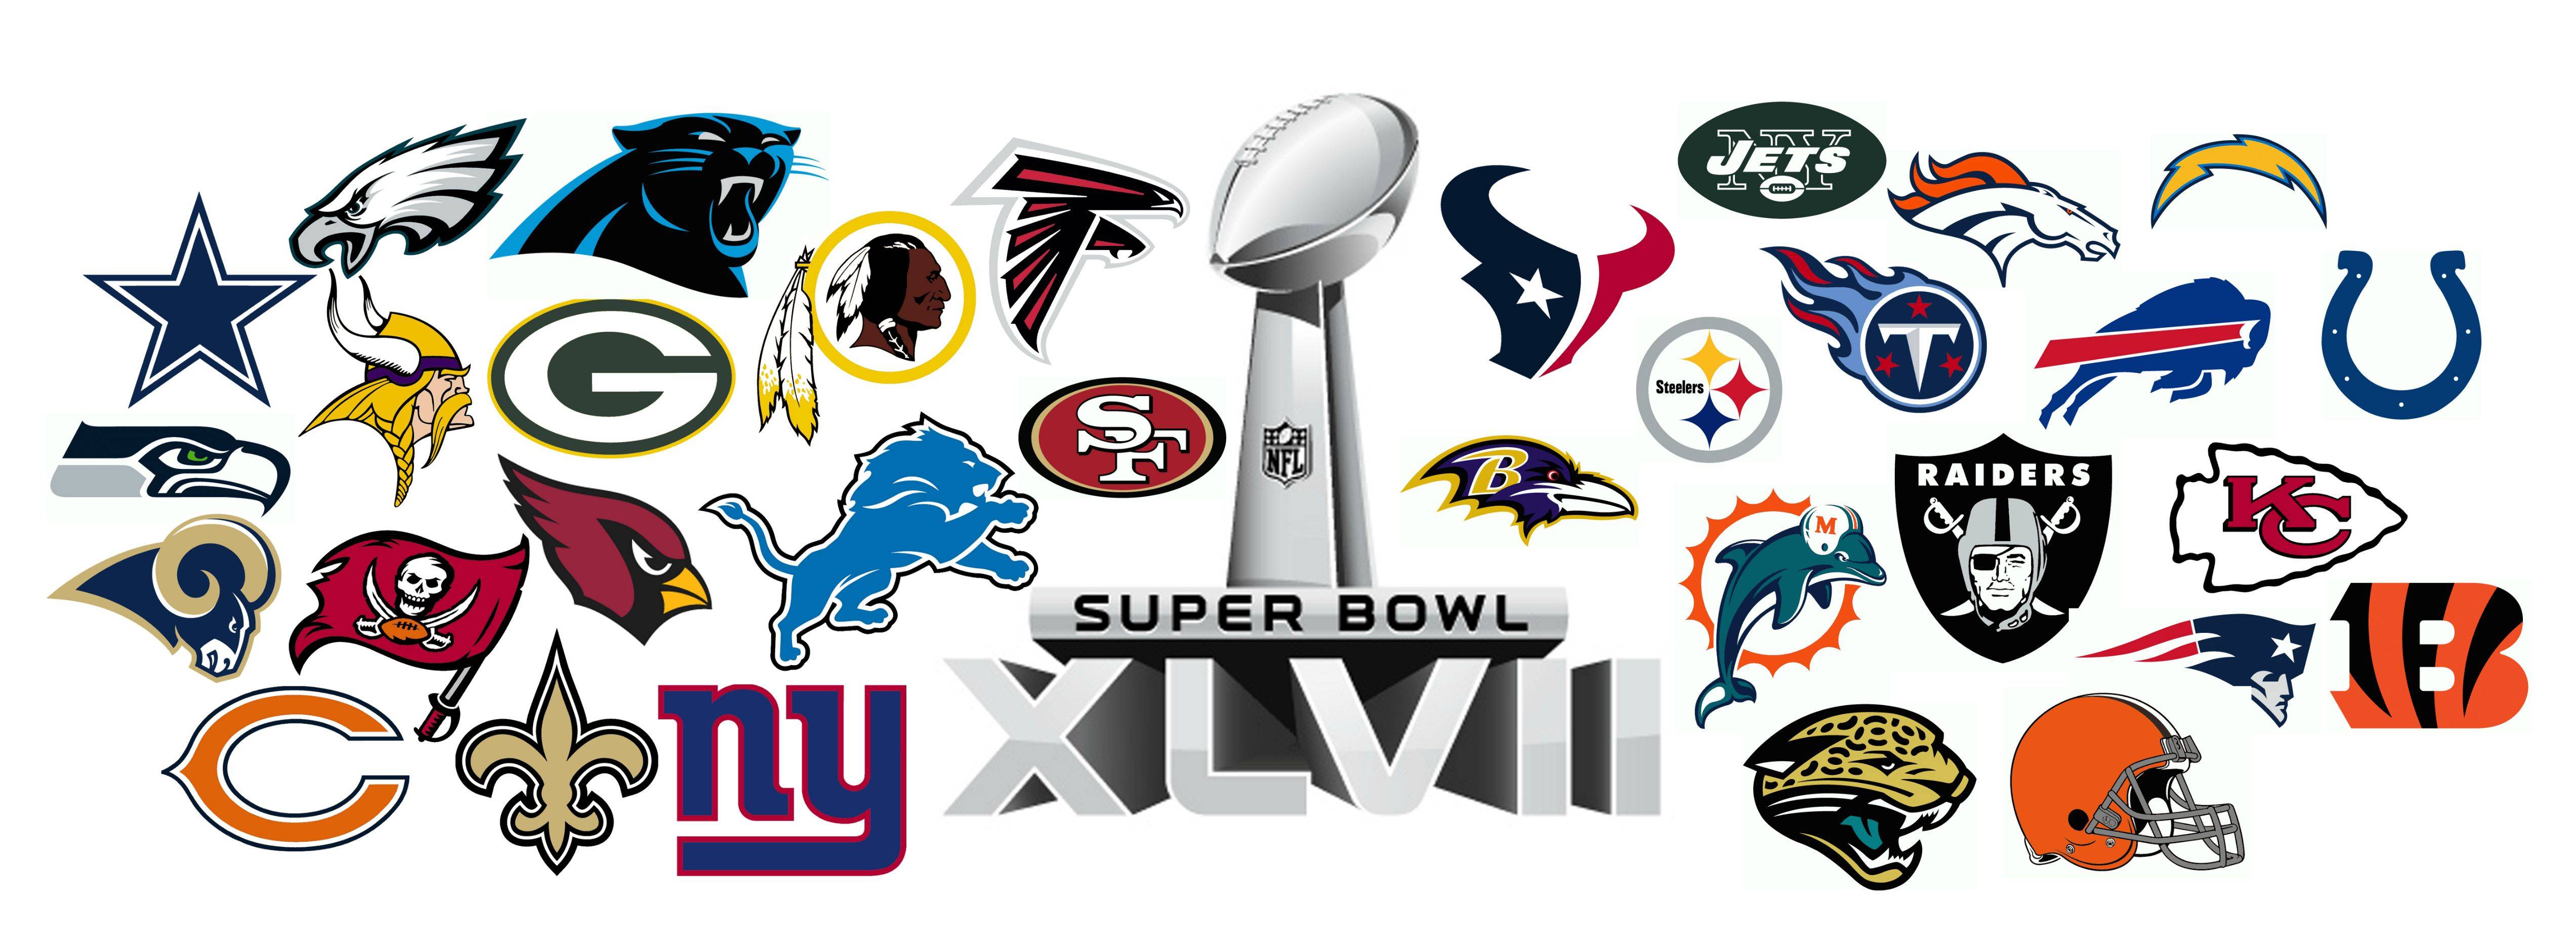 Bird Team Logo - The Philadelphia Eagles logo is the only NFL team logo facing left ...